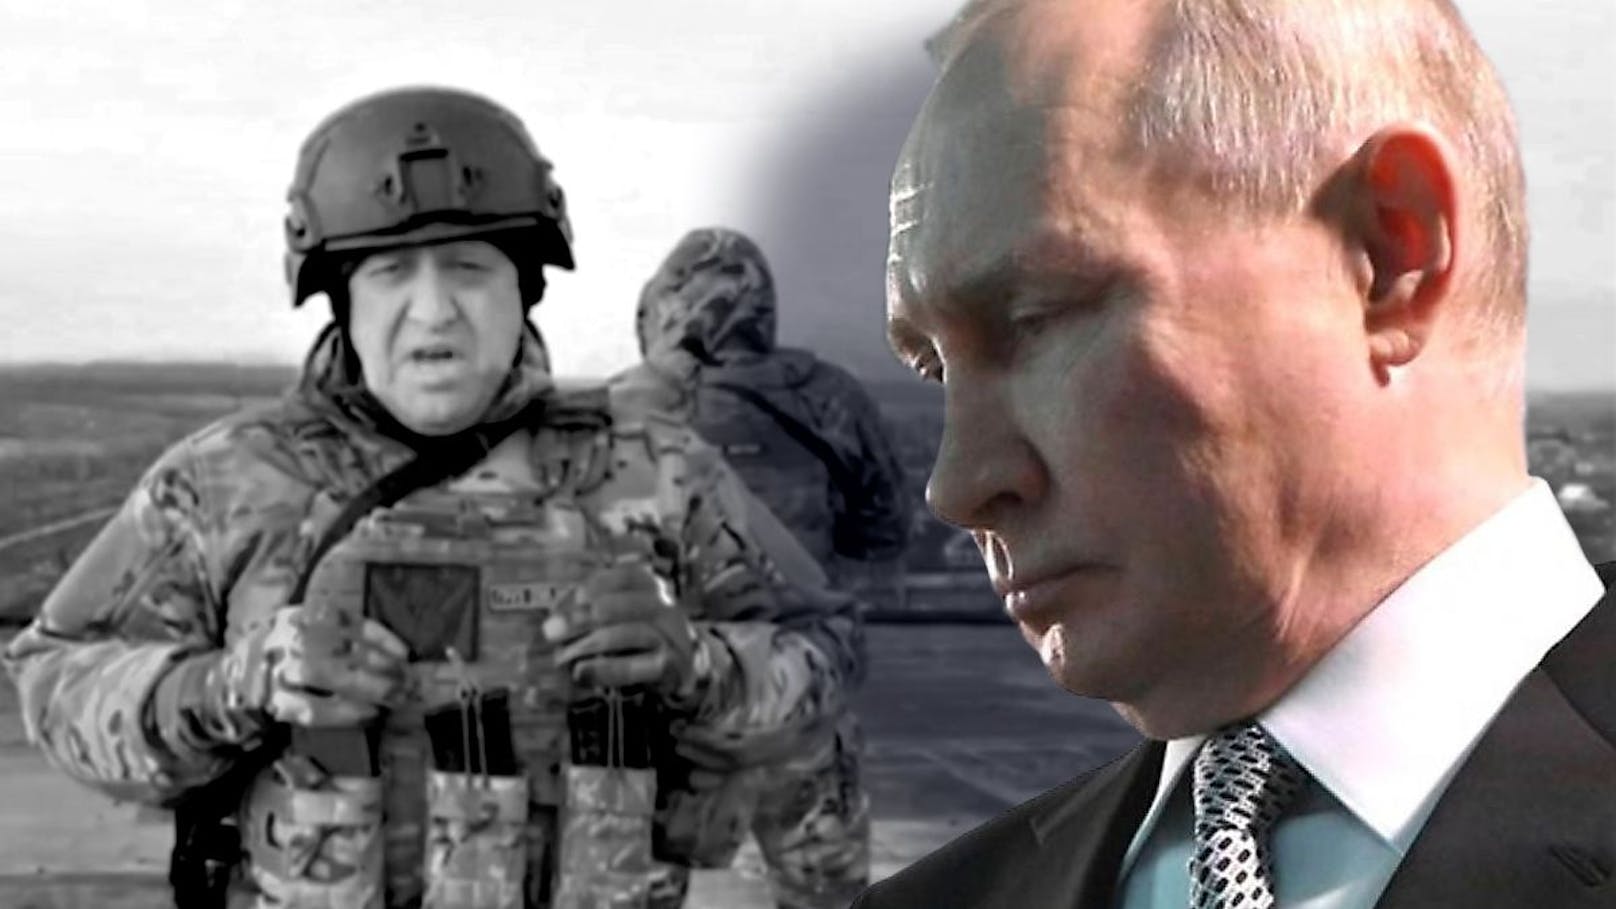 "Lüge" – Kreml weist Vorwürfe zu Prigoschin-Tod zurück